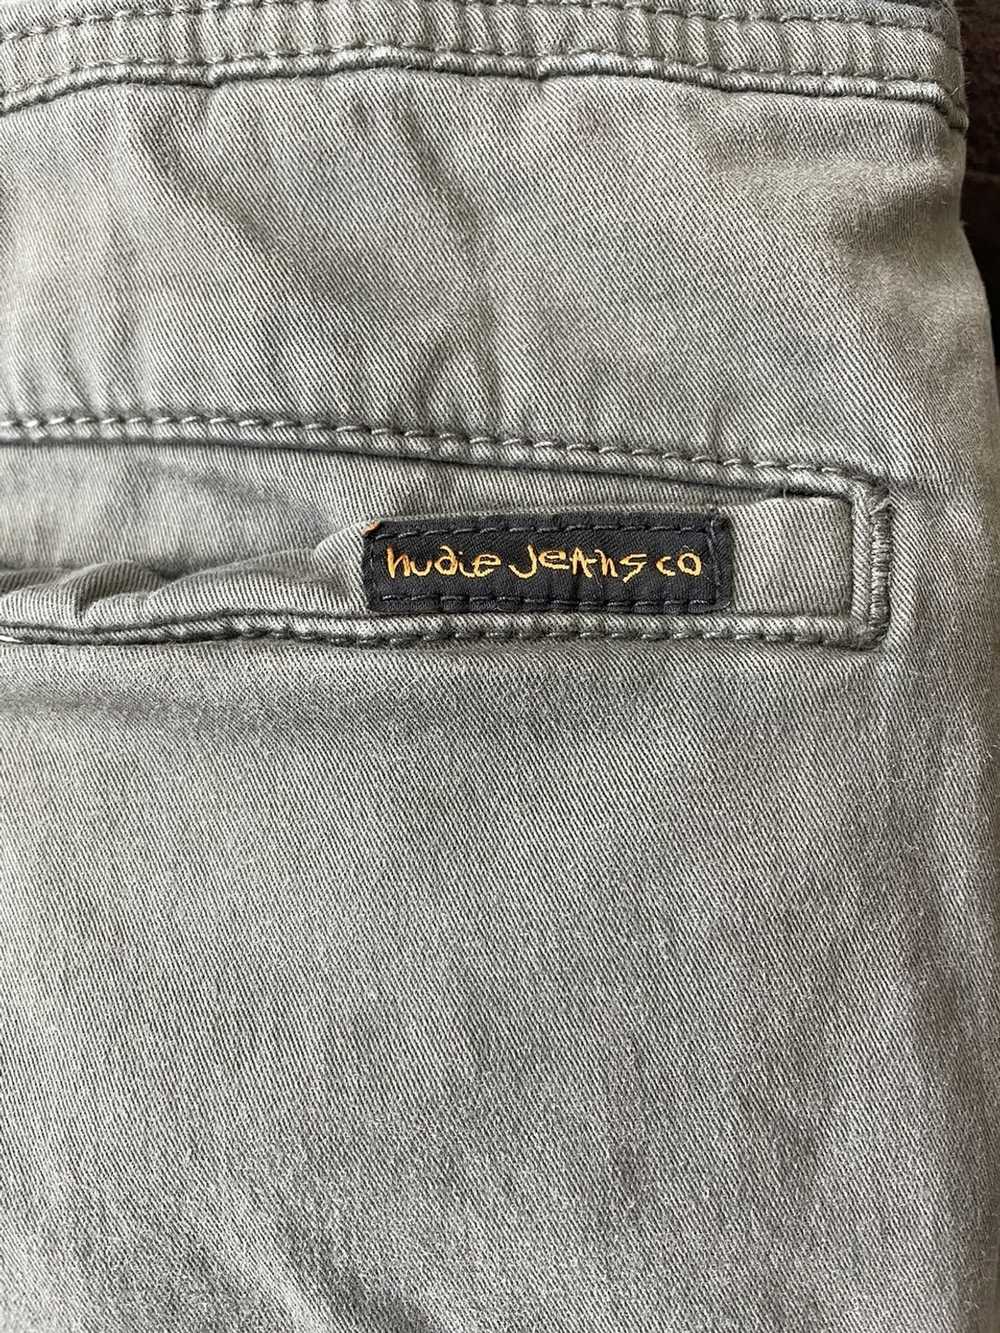 Nudie Jeans Nudie Jeans Olive Trousers - image 2